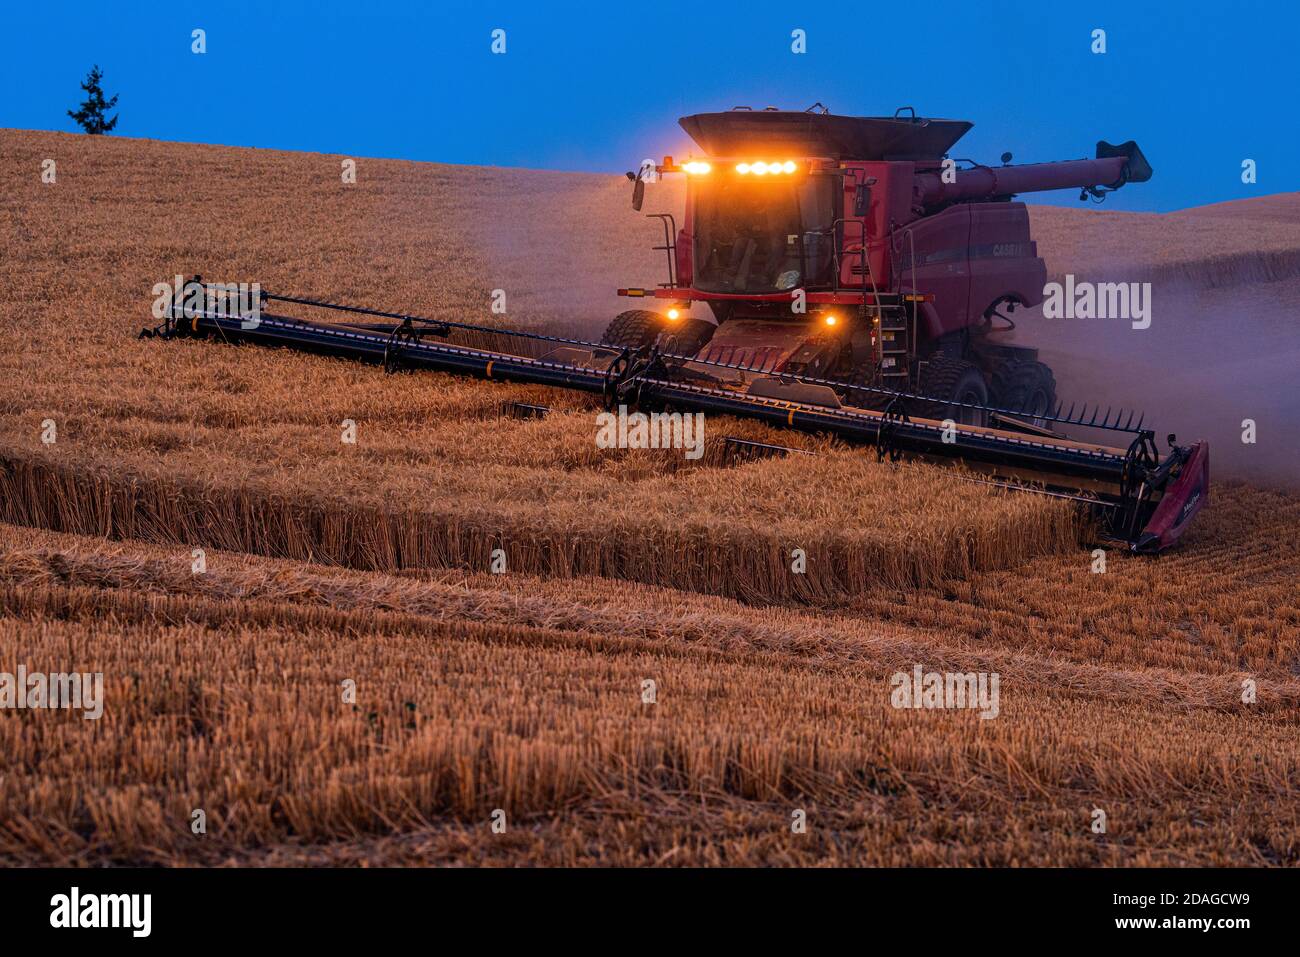 La moissonneuse-batteuse CaseIH récolte du blé au crépuscule sur les collines de La région de Palouse dans l'est de Washington Banque D'Images